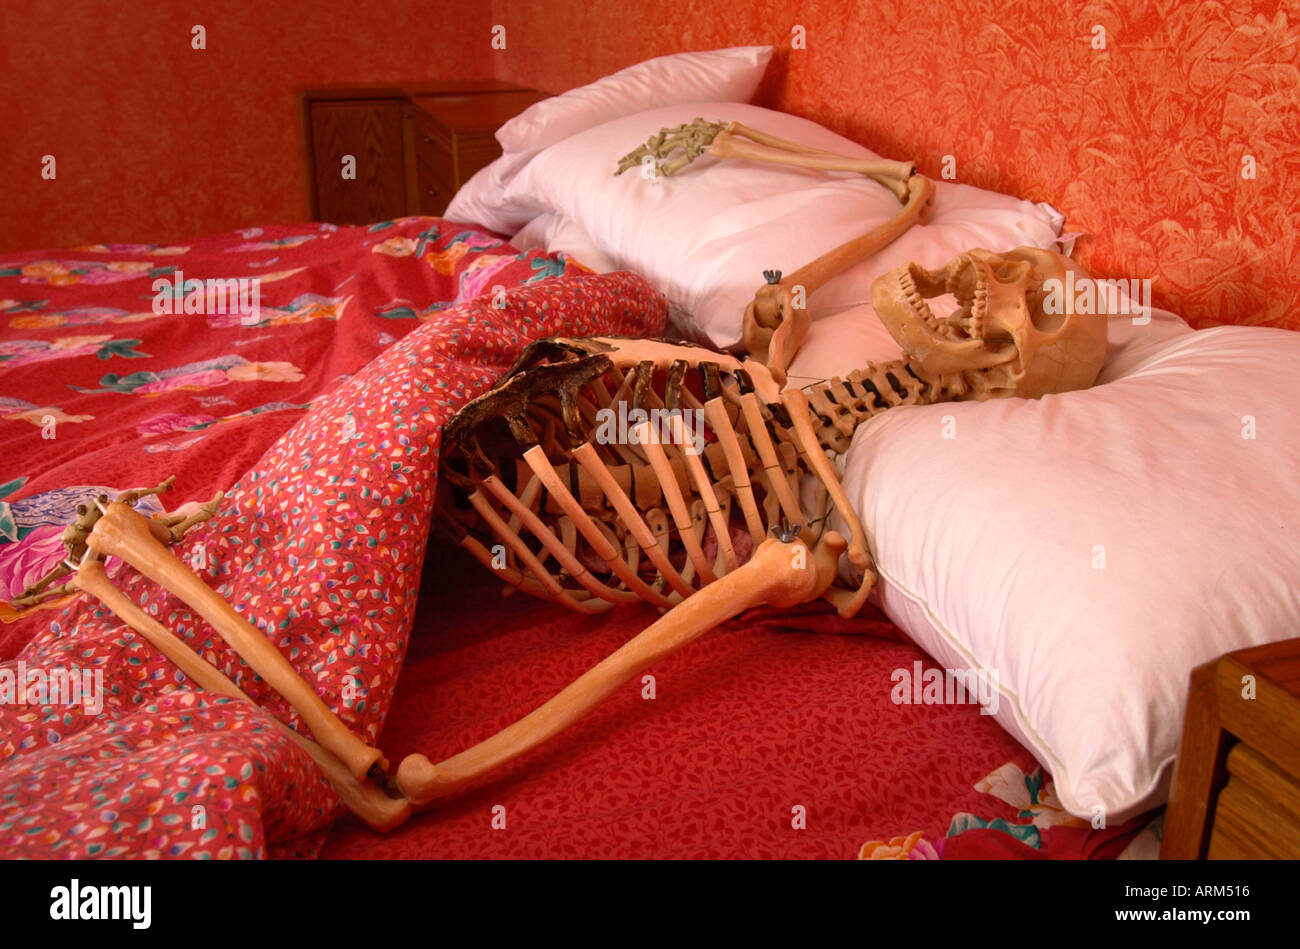 a-skeleton-in-bed-ARM516.jpg